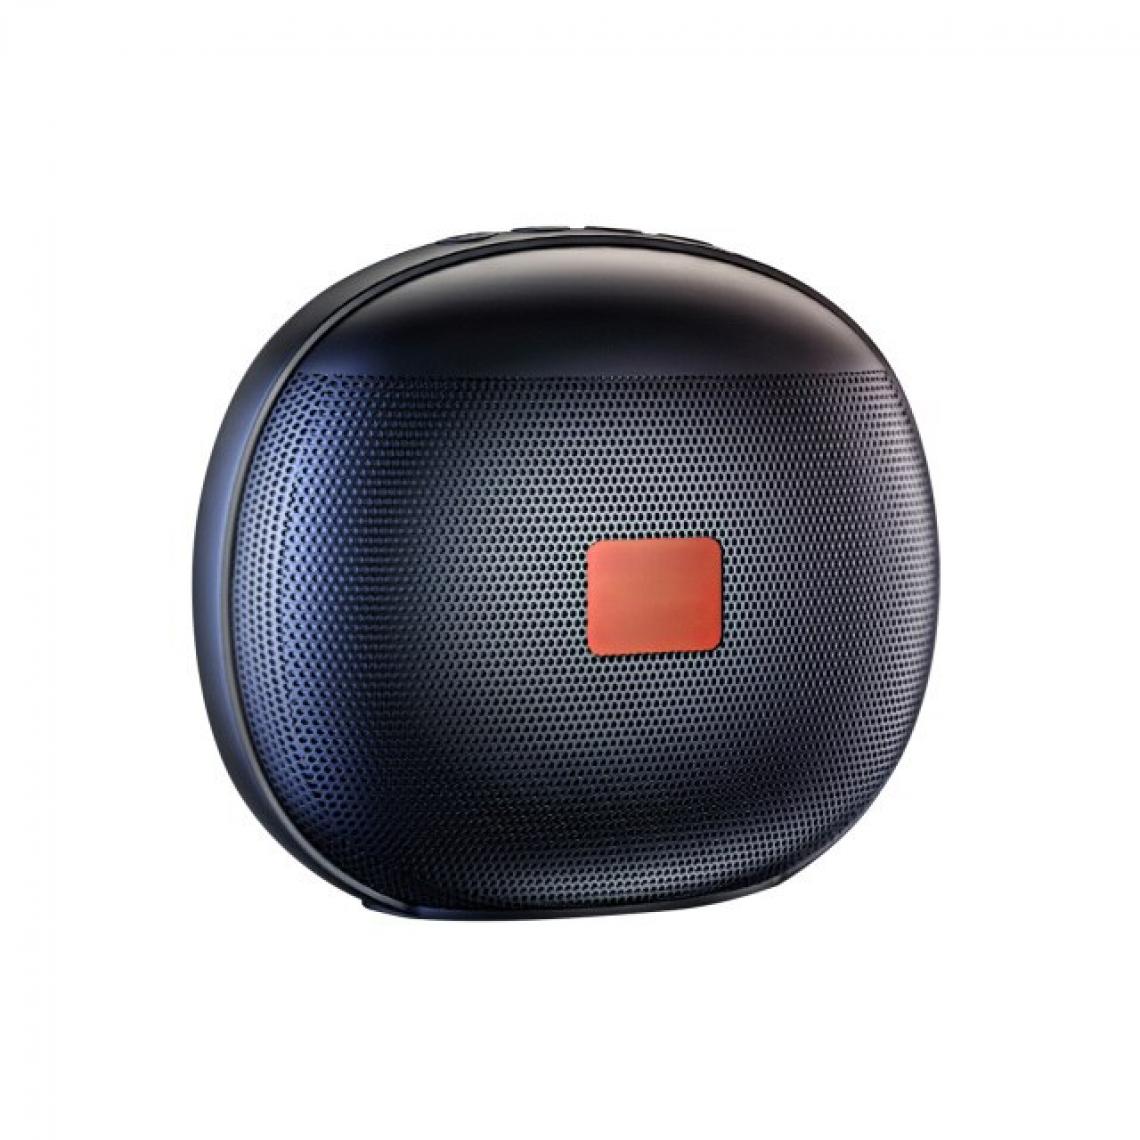 Universal - Mini haut-parleur portable sans fil Bluetooth haut-parleur subwoofer enceinte extérieure support carte FM TF sport petit joueur | haut-parleur portable (noir) - Enceinte PC